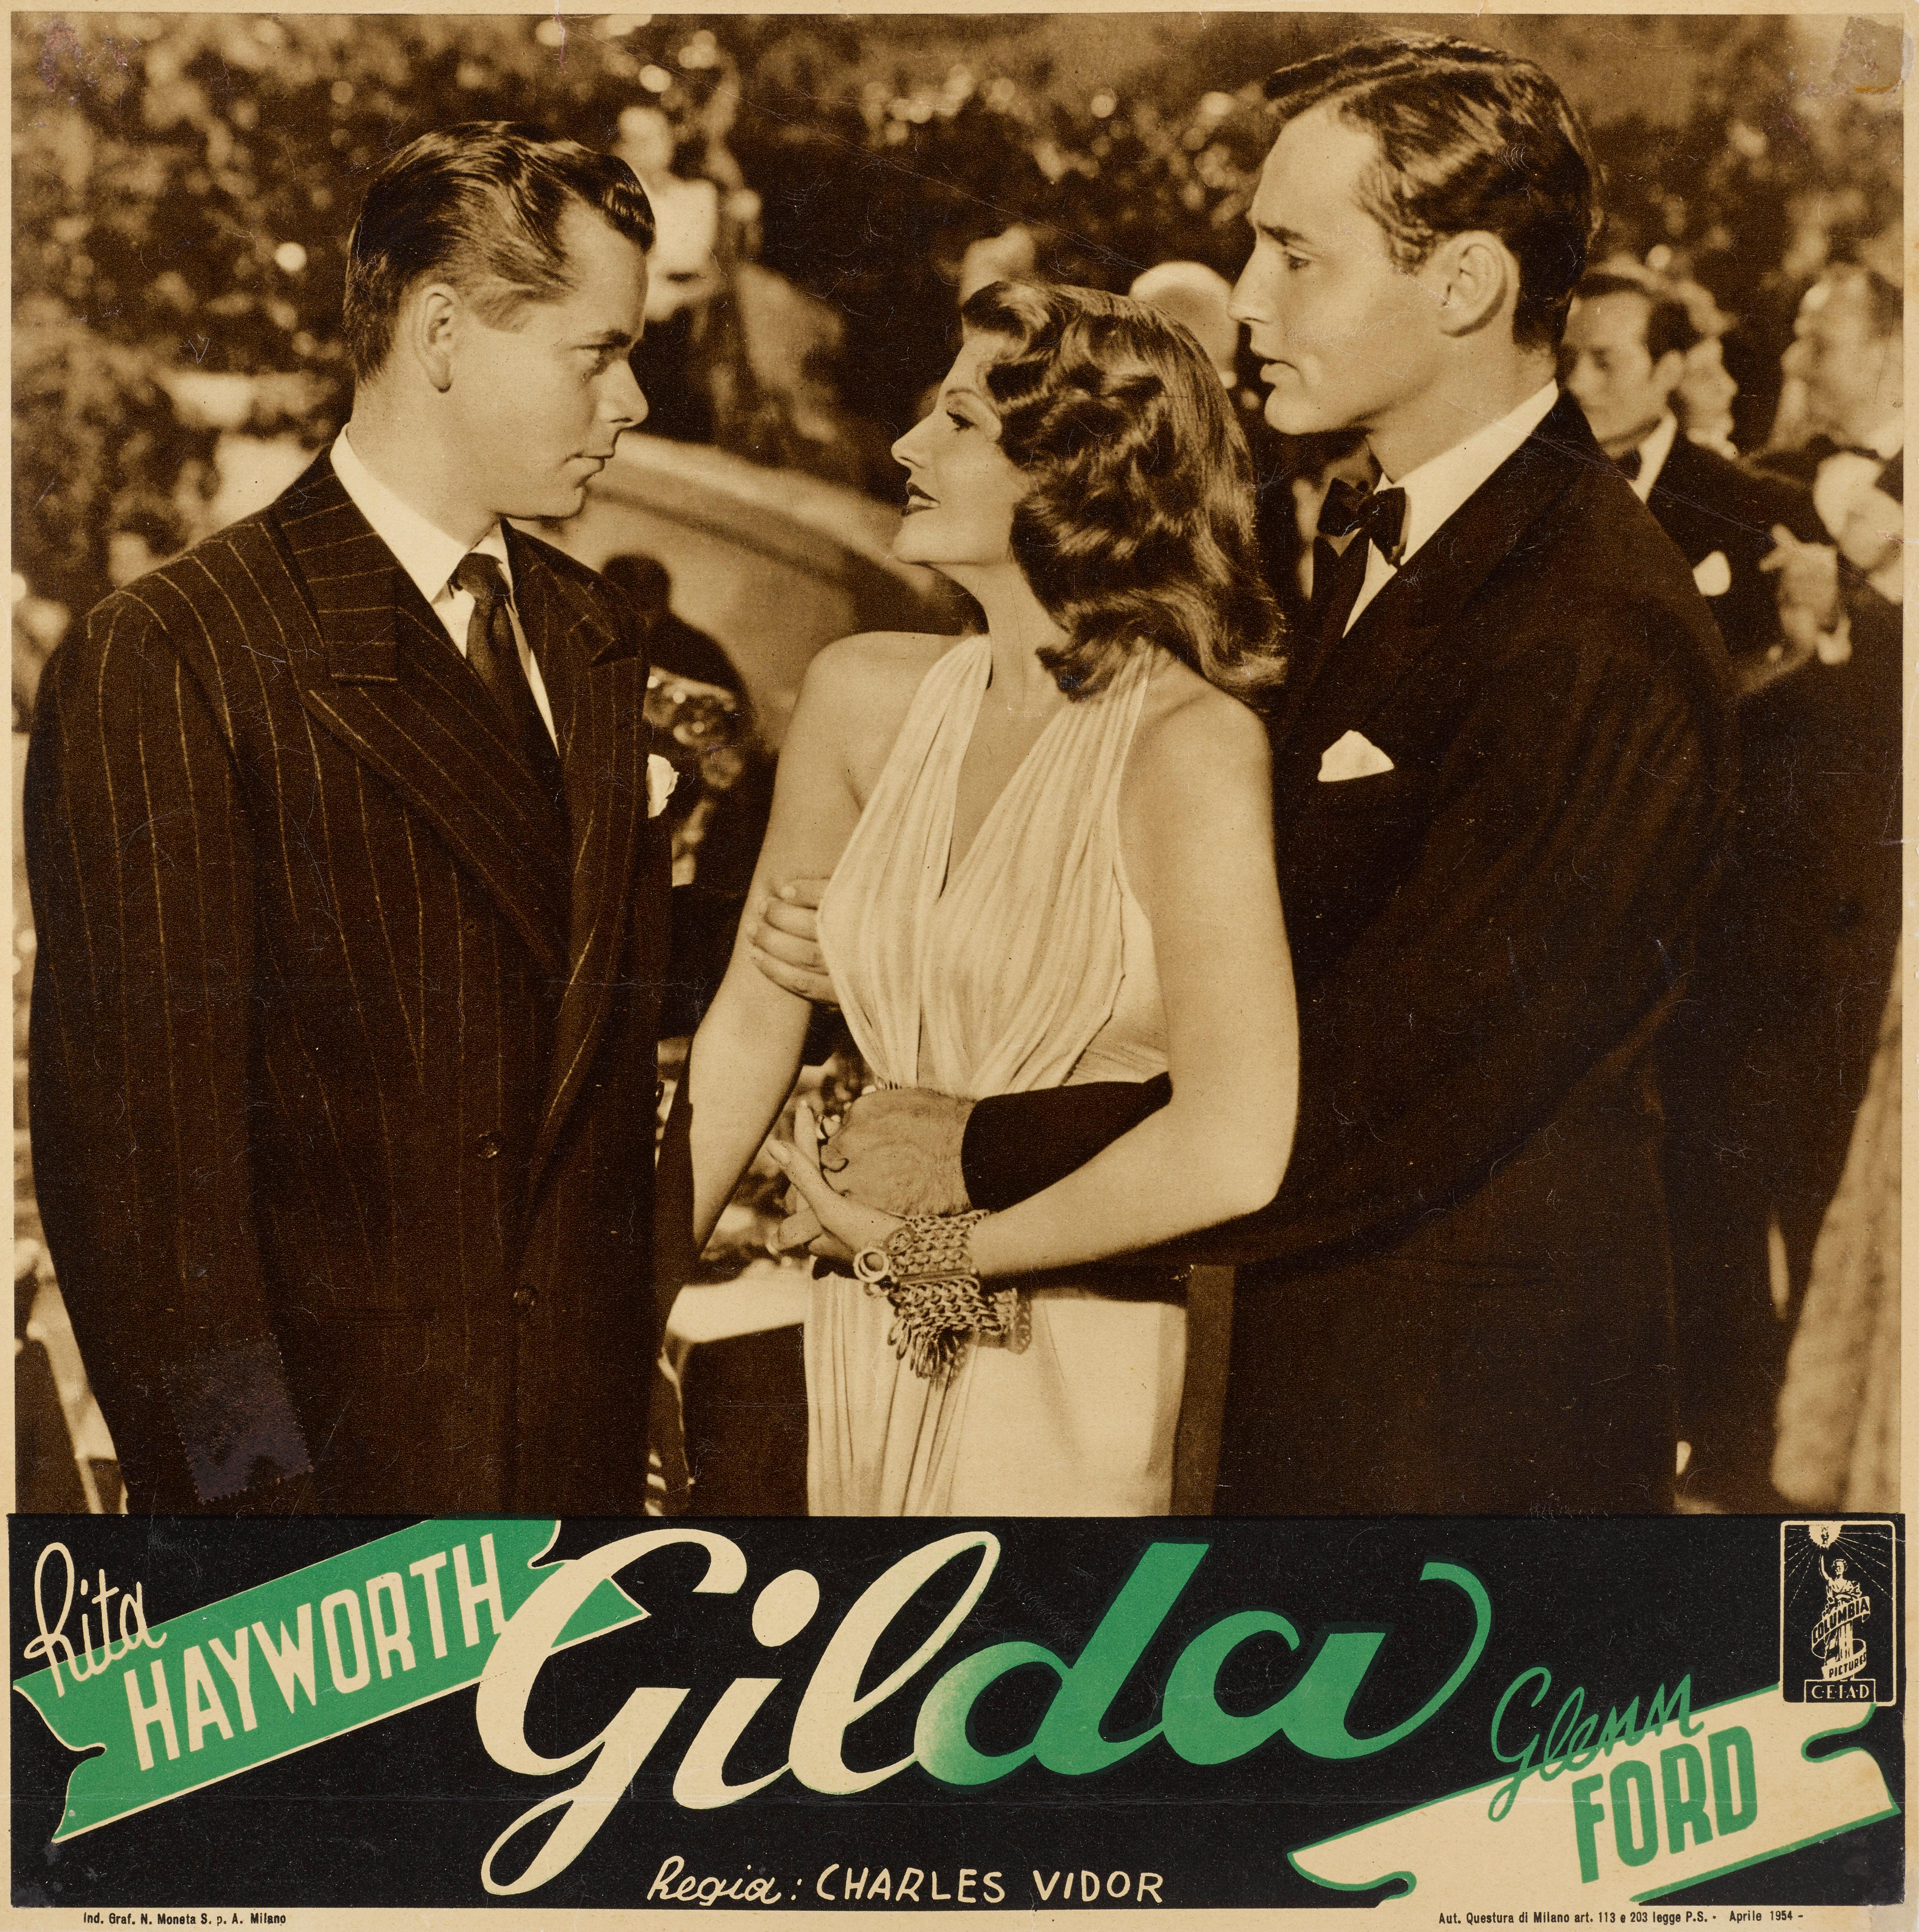 Originales italienisches Filmplakat, das für das Foyer eines Kinos entworfen wurde. Dieser klassische Film Noir von 1946 mit Rita Hayworth und Glenn Ford in den Hauptrollen wurde von Charles Vidor inszeniert.